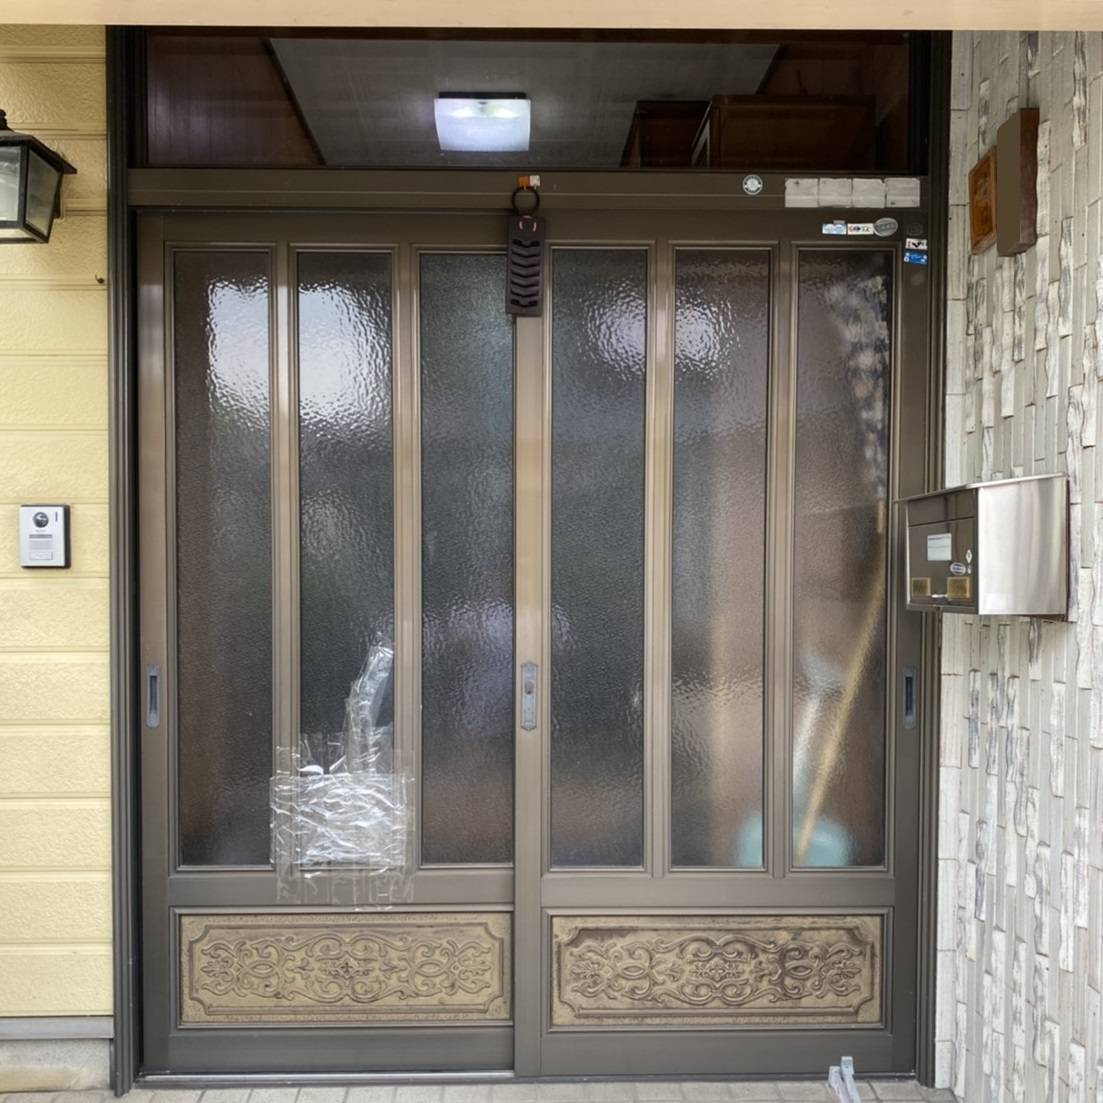 窓工房テラムラのガラスが割れた玄関引戸。いっそ修理でなく新しい玄関引戸に交換したいの施工前の写真1